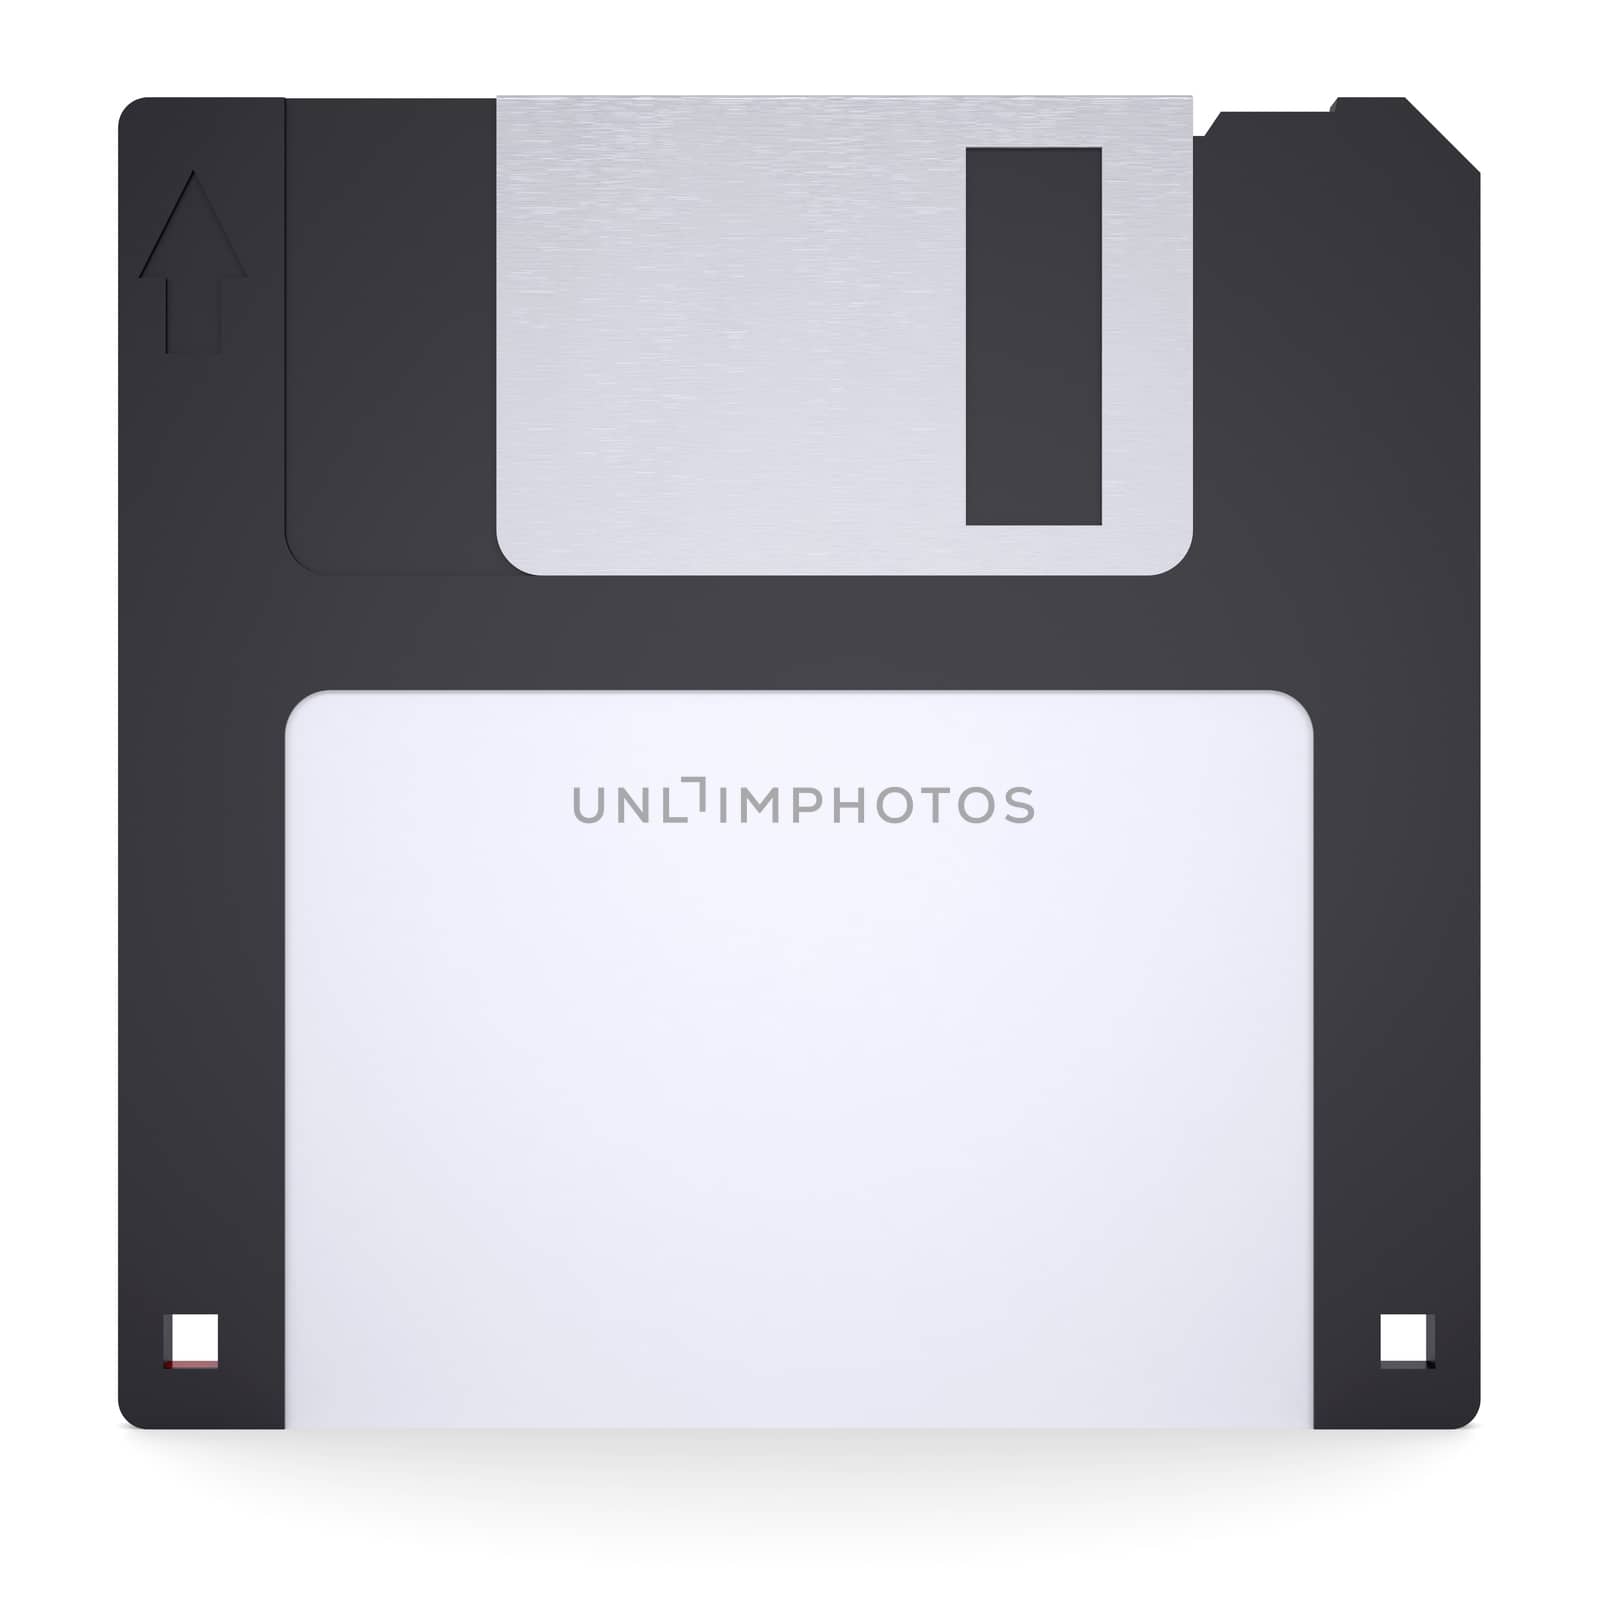 Floppy disk by cherezoff